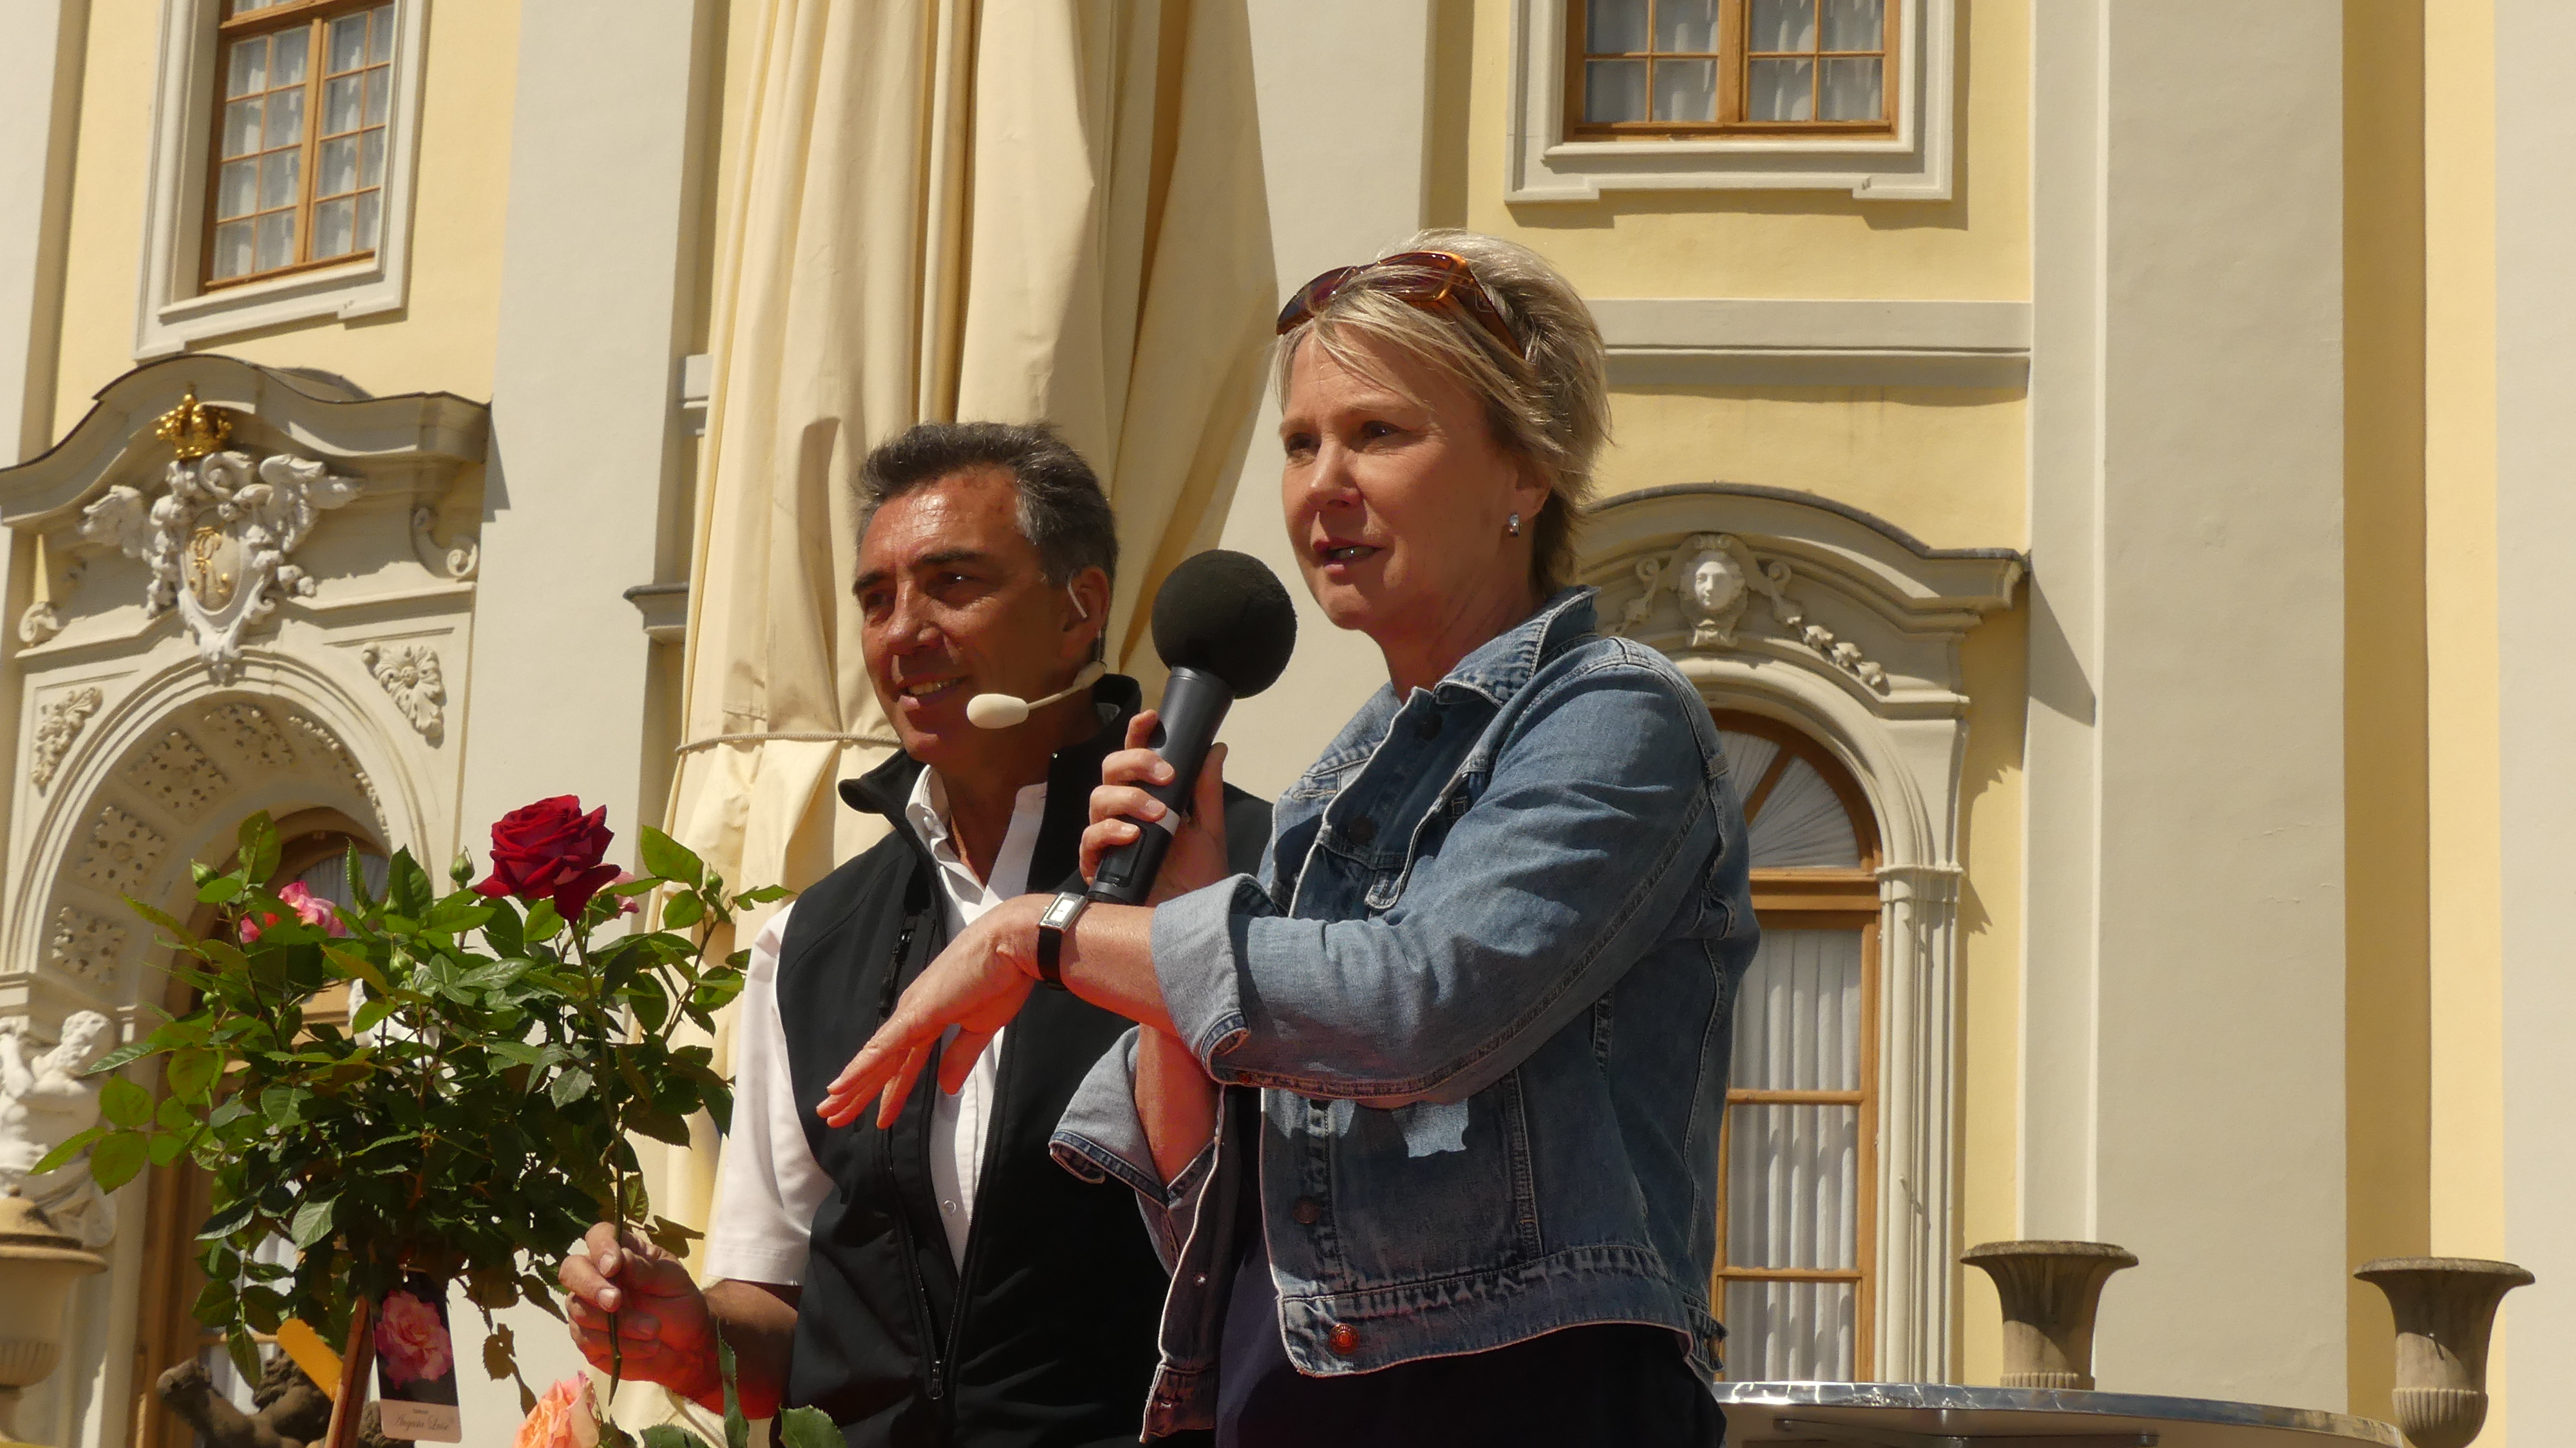 Bühnenmoderation bei den „Barocken Gartentagen“ mit Rosenspezialist Peter Schwarzkopf /Fellbacher Rosen, im Blühenden Barock Ludwigsburg, April/Mai 2018